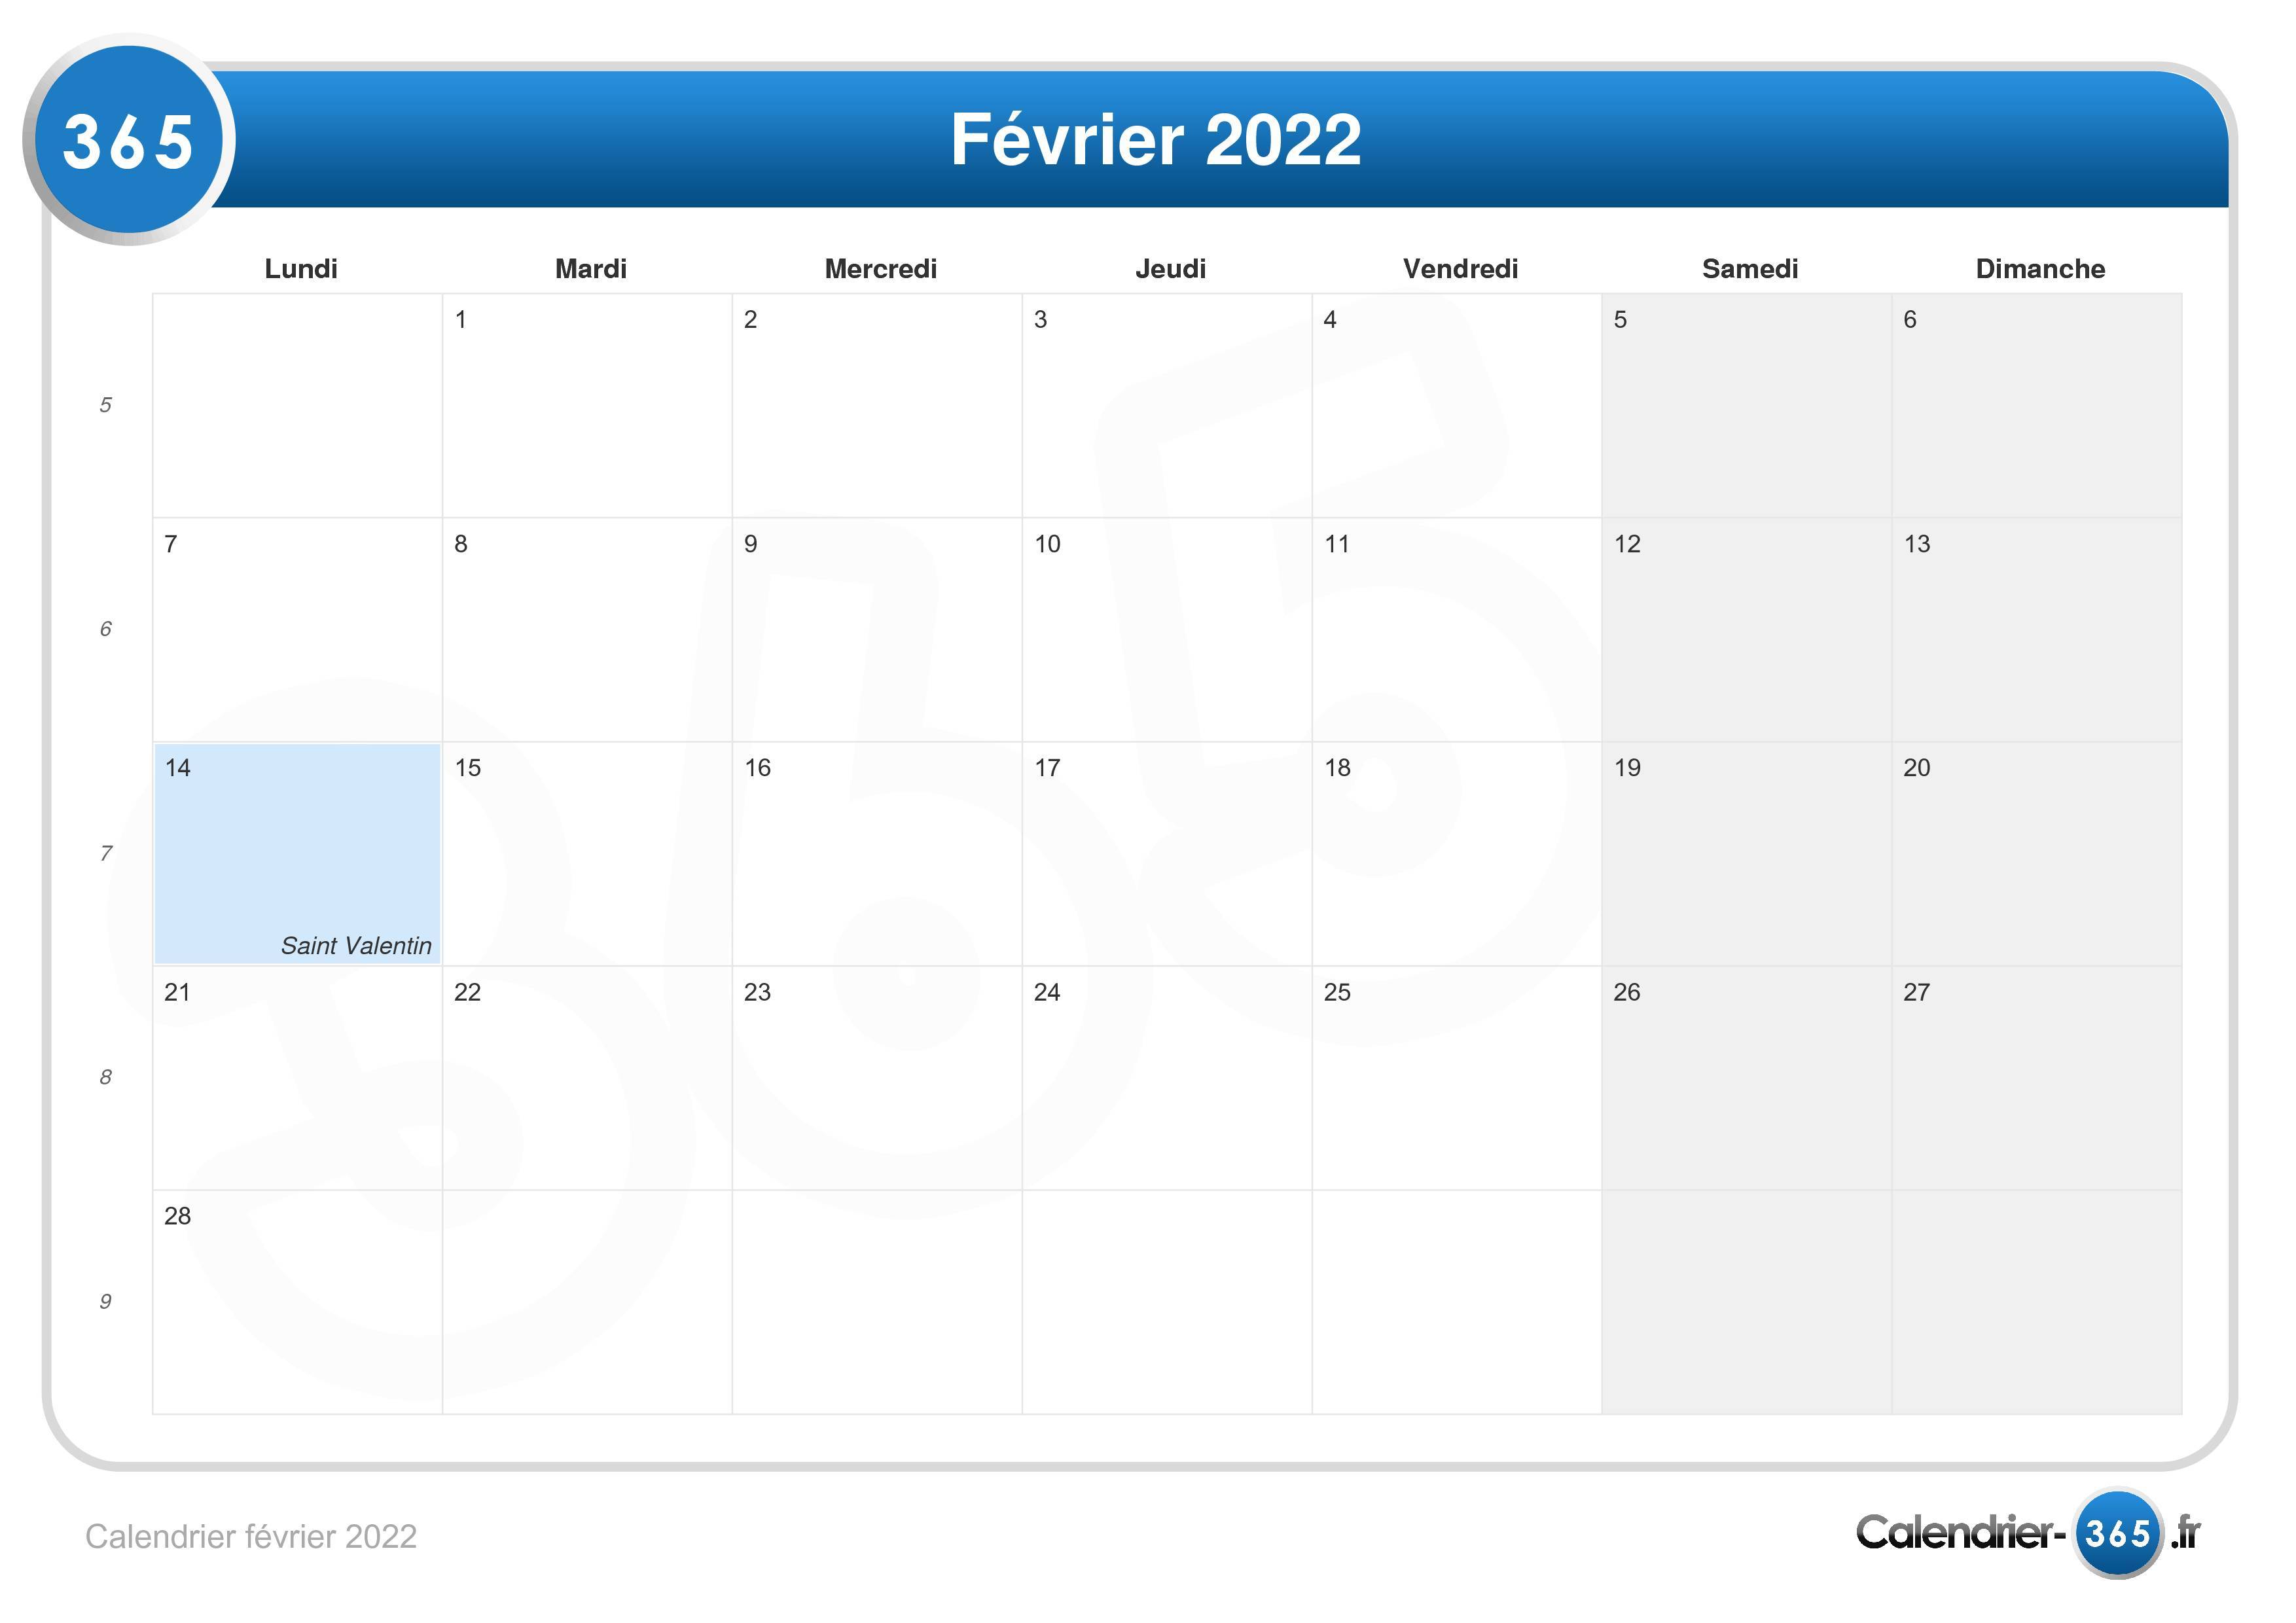 Février 2022 Calendrier Calendrier février 2022